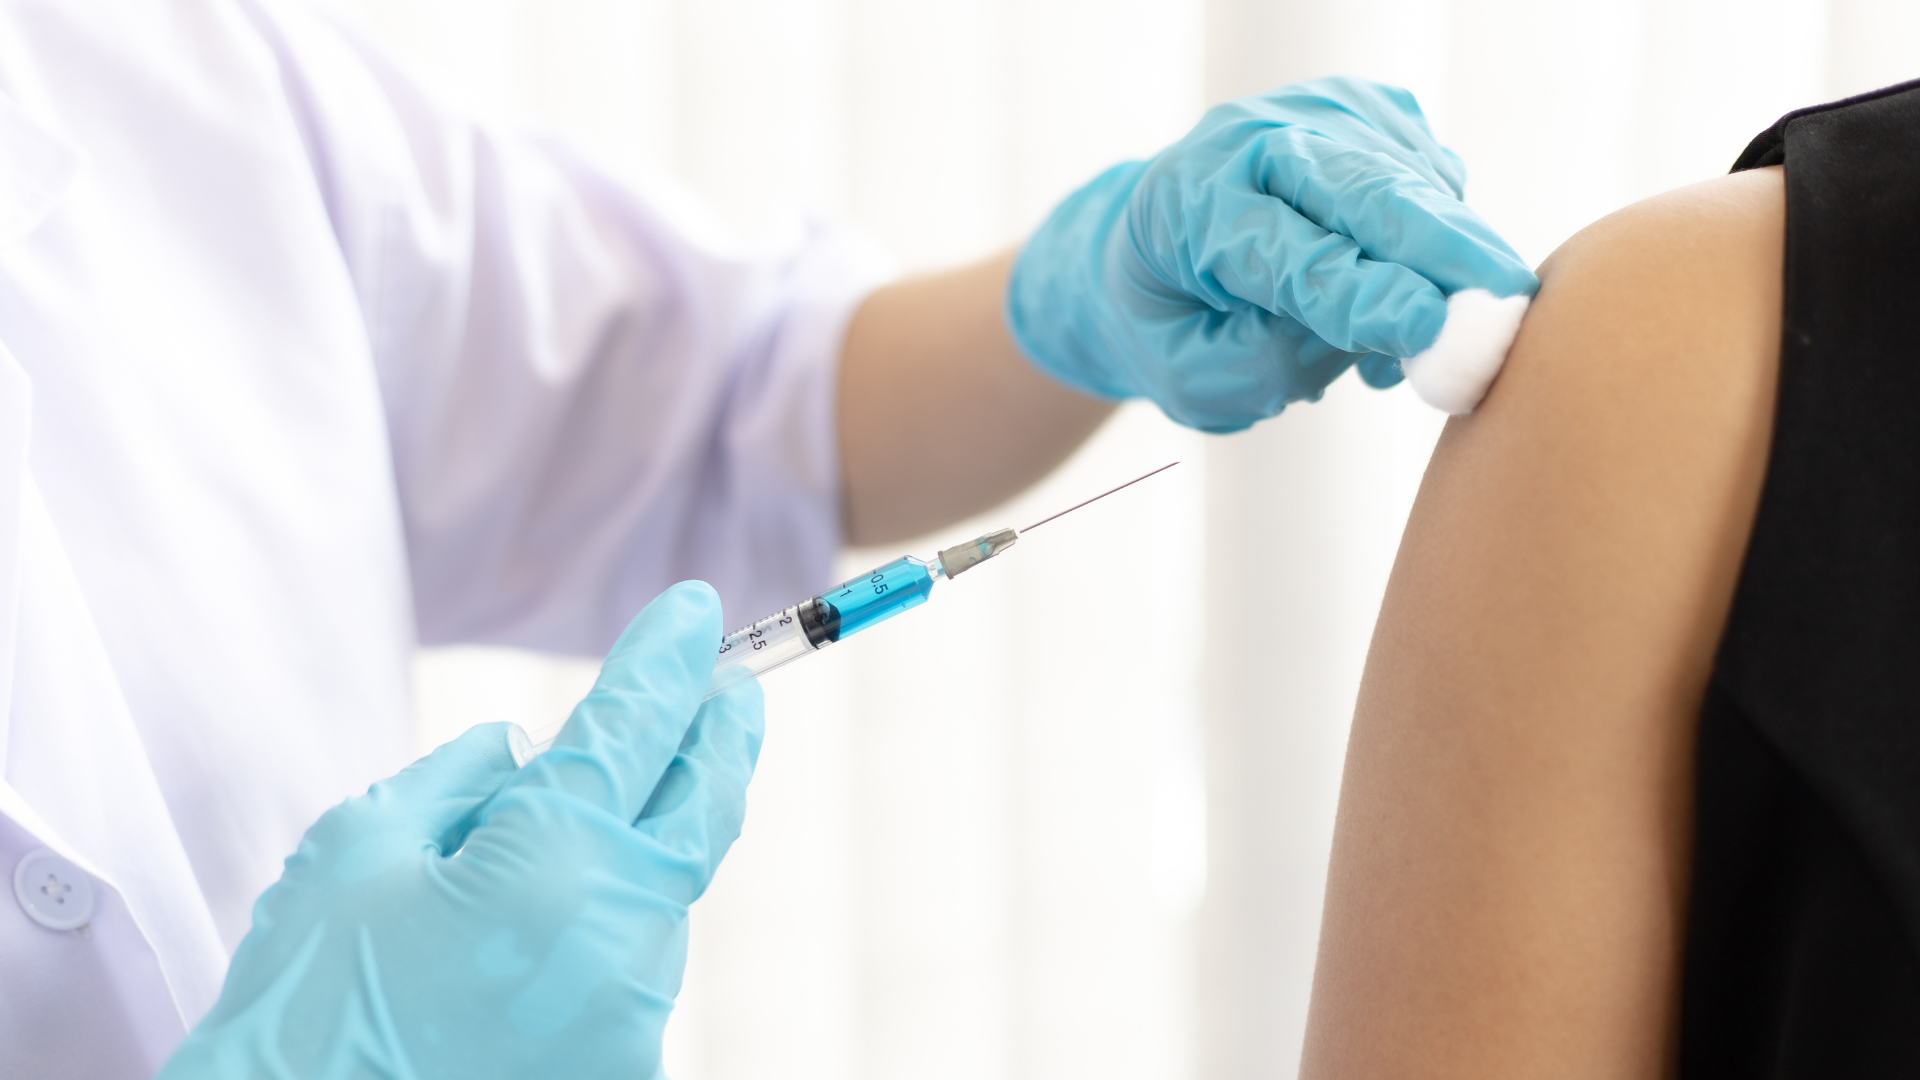 Licenziato per aver comunicato eventi avversi legati al “vaccino” COVID 19